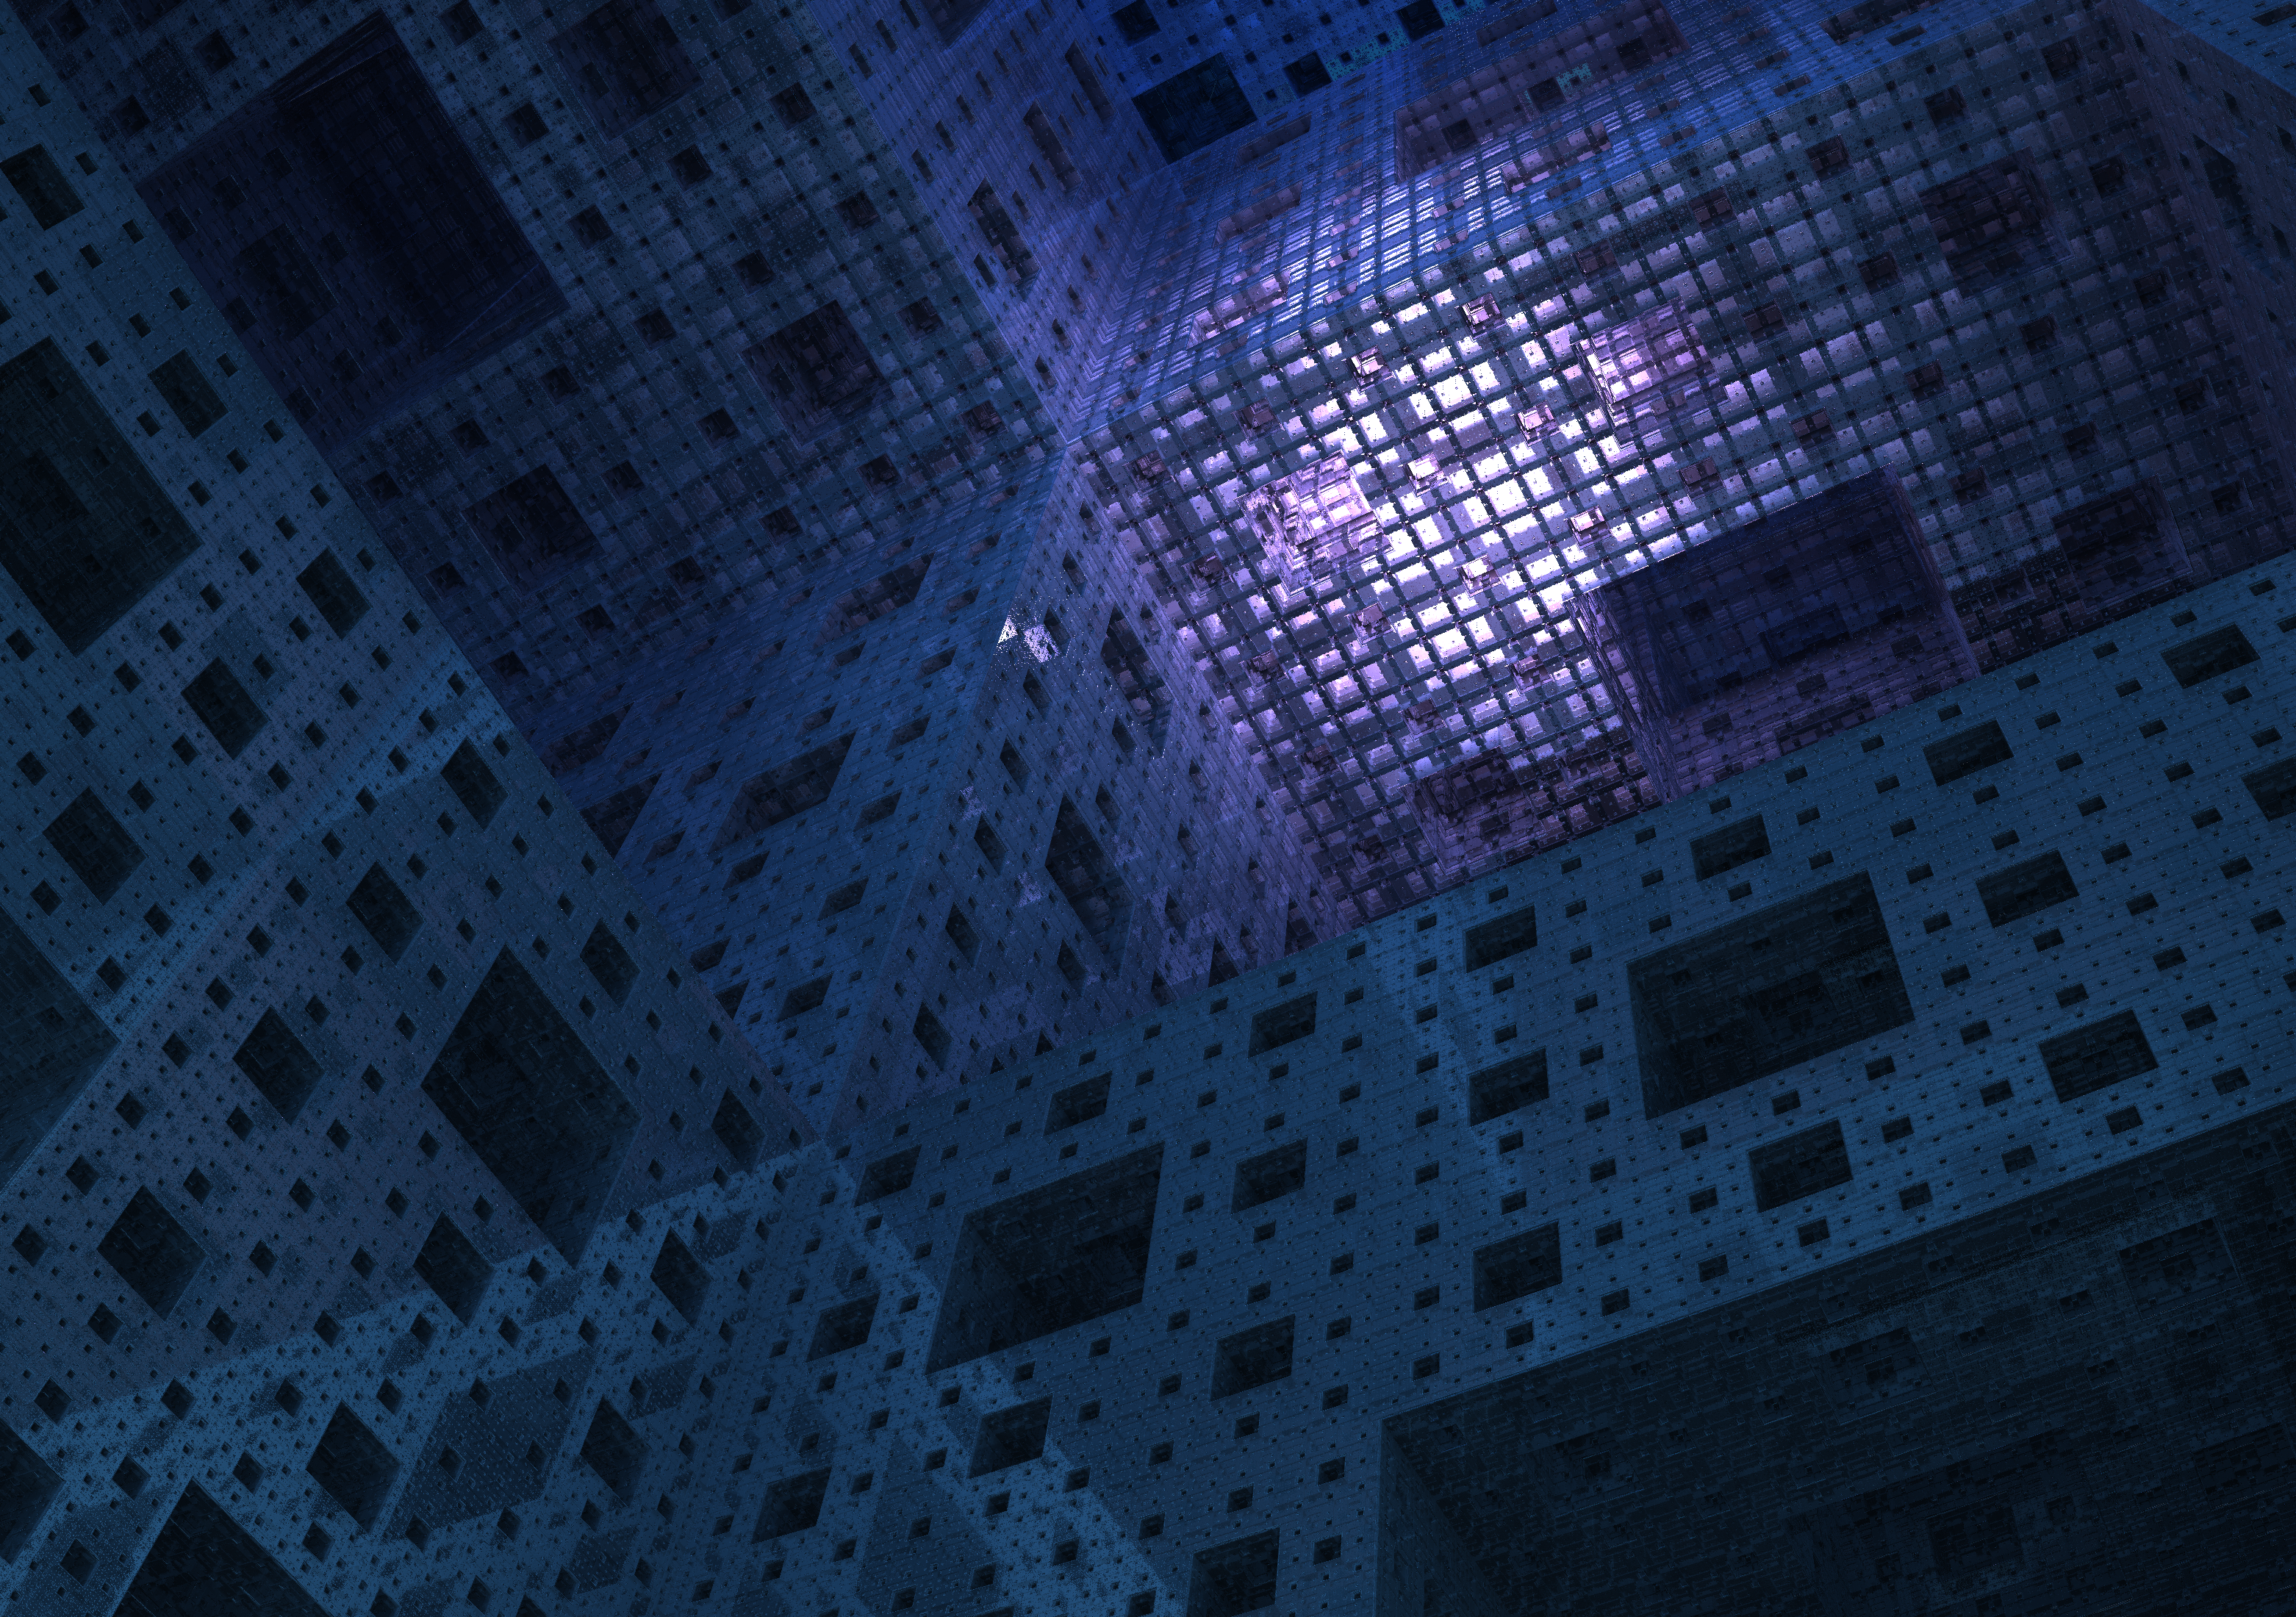 General 3124x2200 Mandelbulb 3D fractal CGI transparency Menger sponge